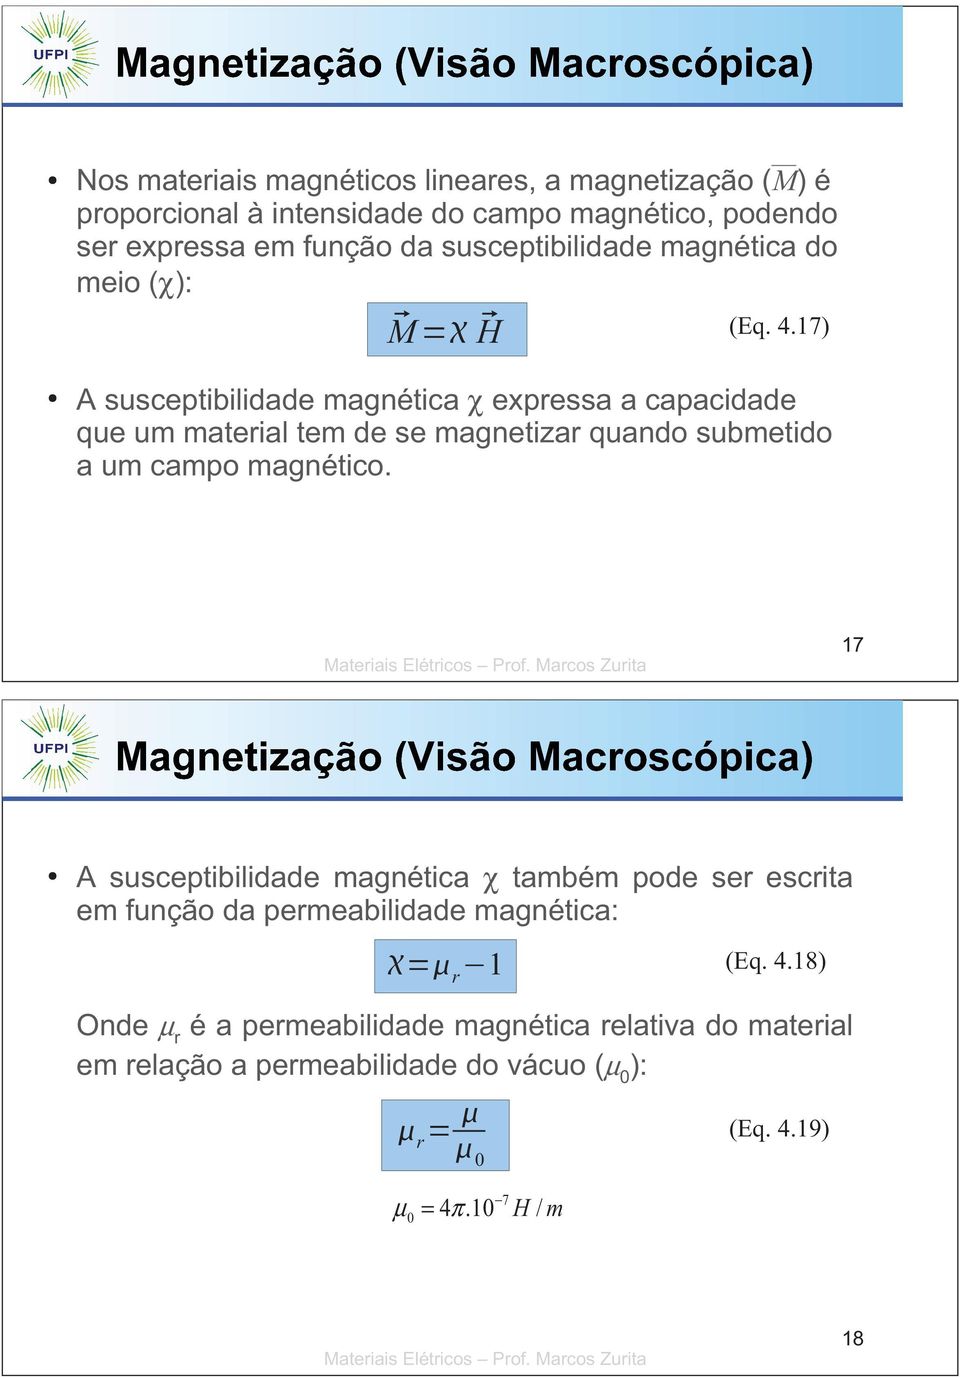 17) A susceptibilidade magnética χ expressa a capacidade que um material tem de se magnetizar quando submetido a um campo magnético.